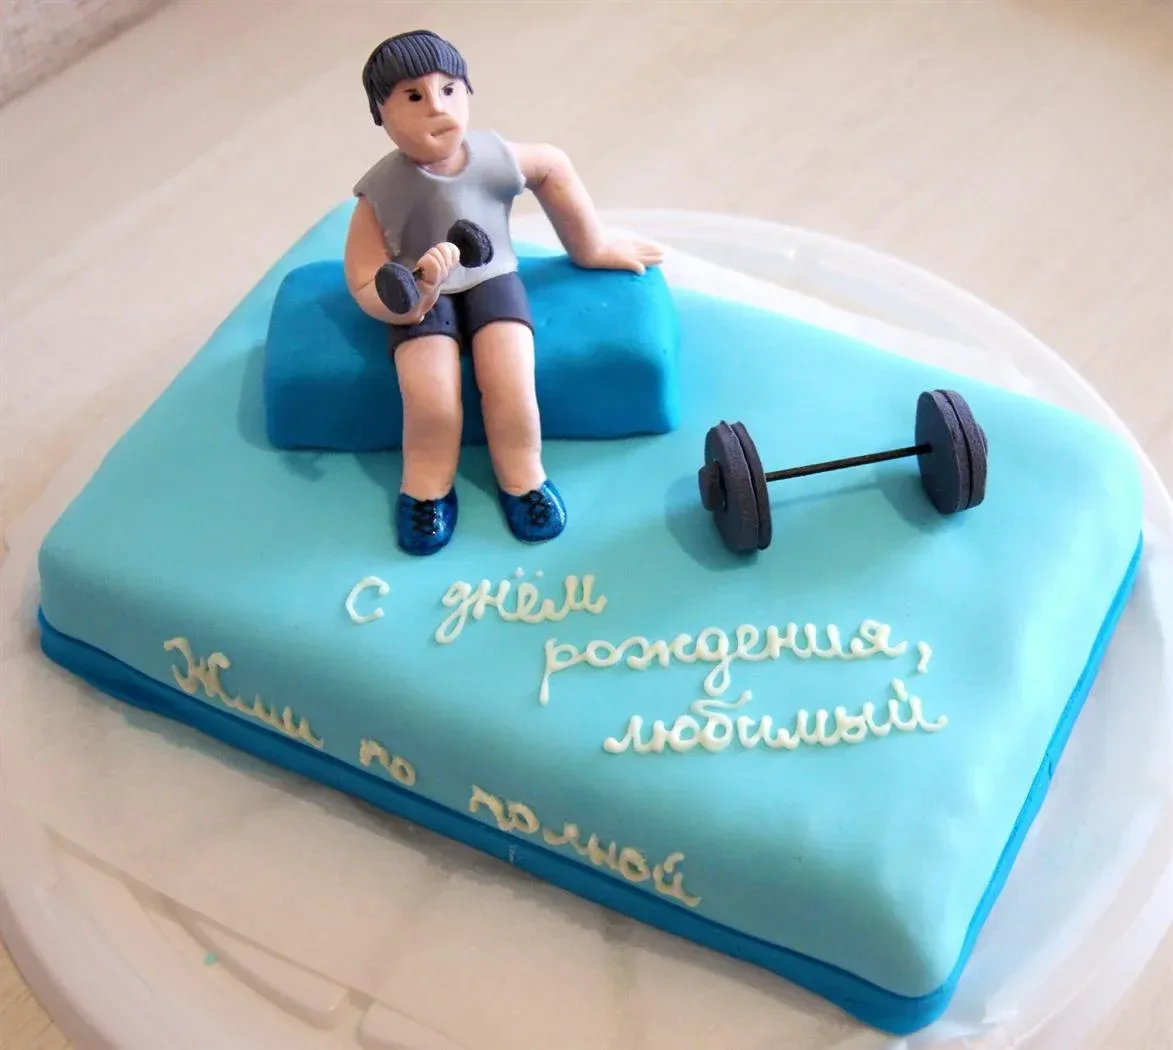 Поздравление с днем рождения спортсмена своими словами. Картинки с днём рождения спортсмену. С днём рождения спортсмену мальчику. Торт для спортсмена на день рождения. С днем рождения подростку спортсмену.